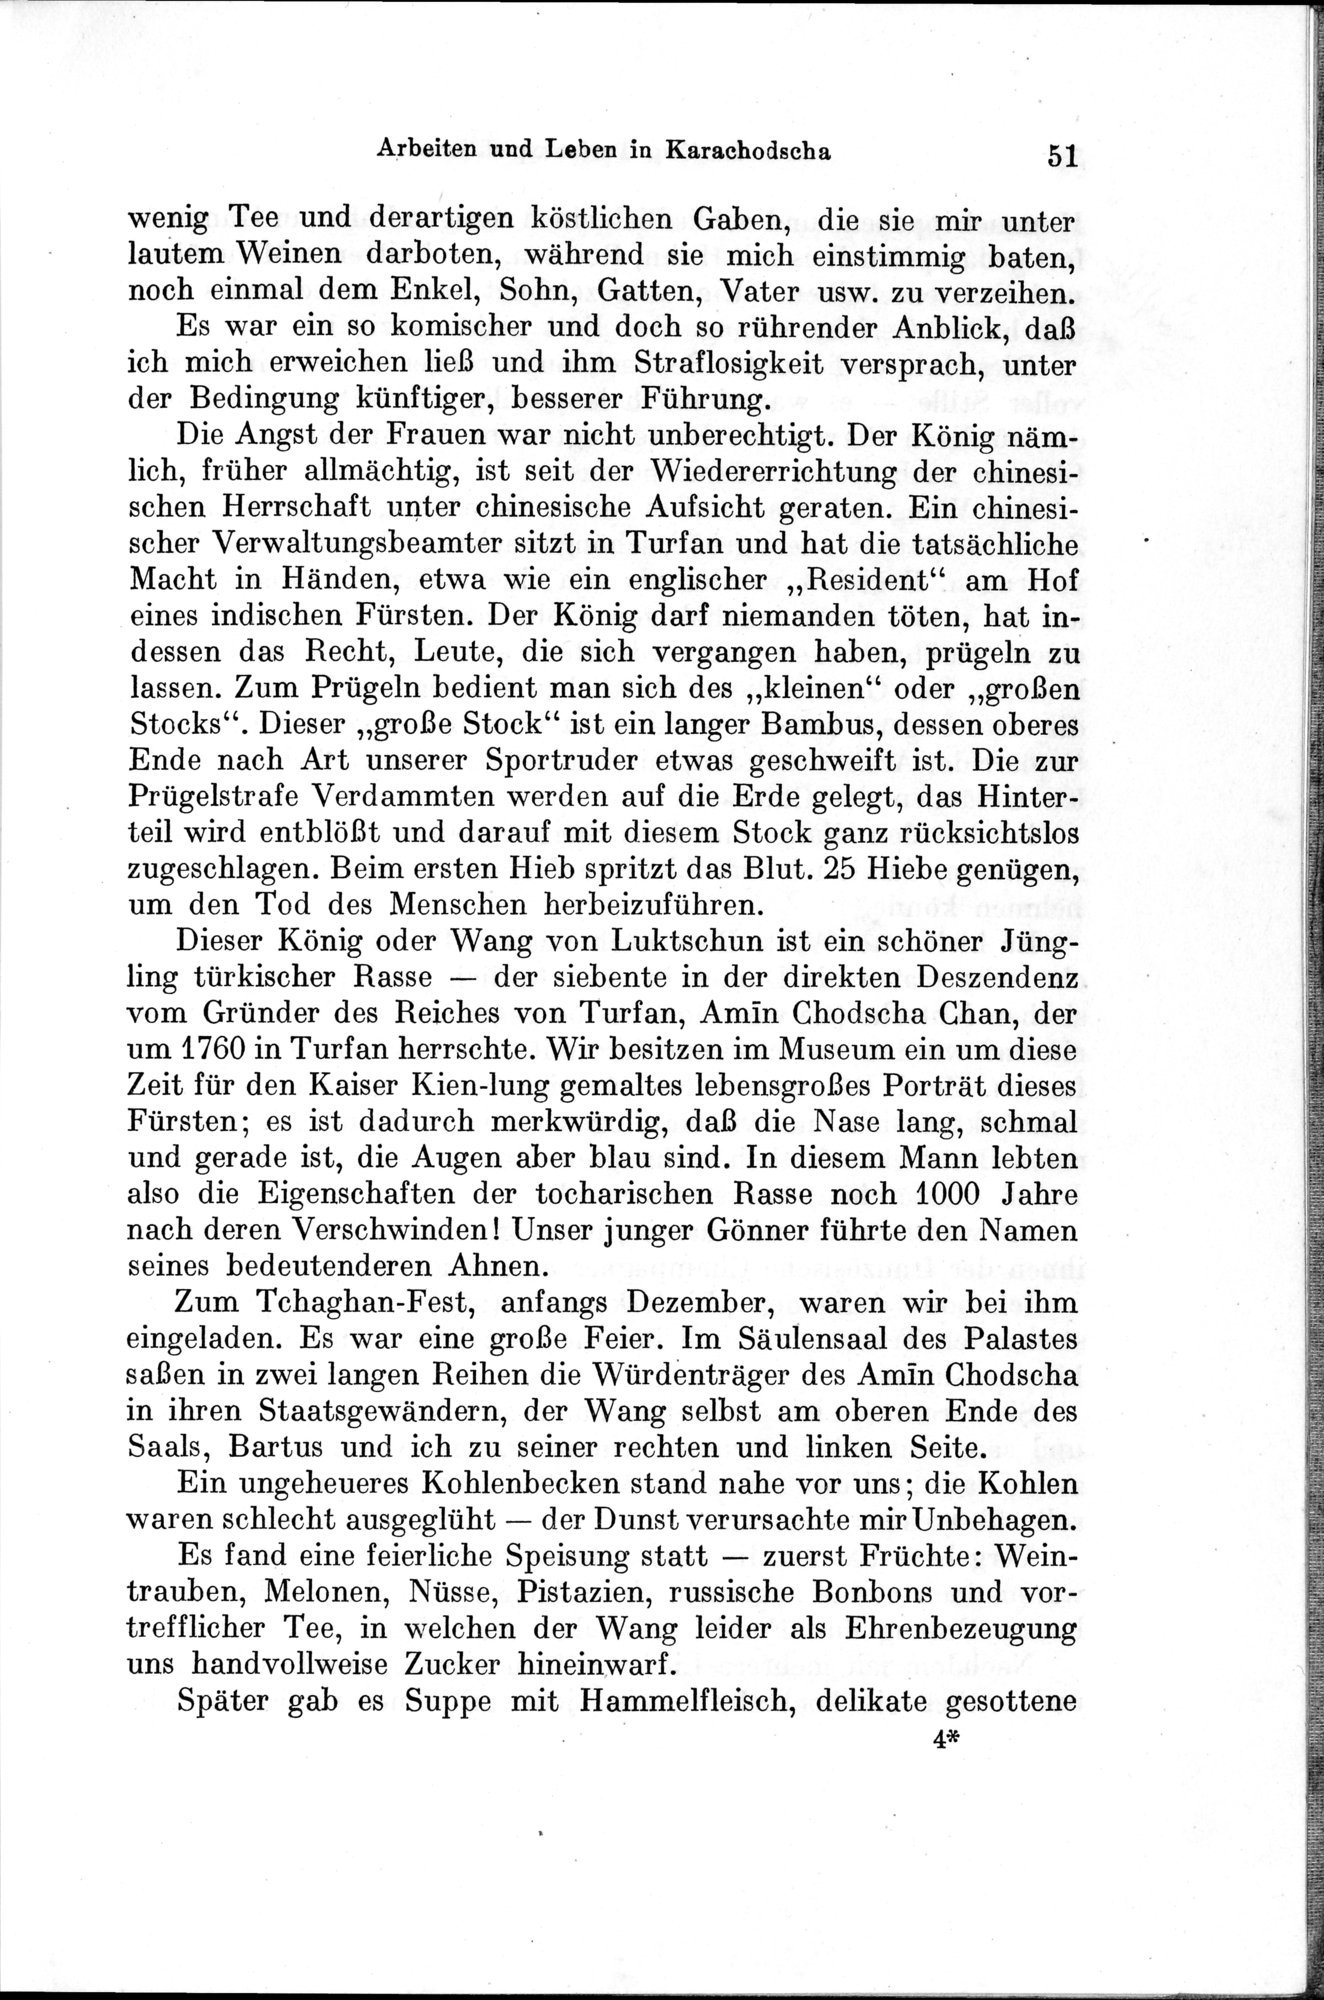 Auf Hellas Spuren in Ostturkistan : vol.1 / Page 79 (Grayscale High Resolution Image)